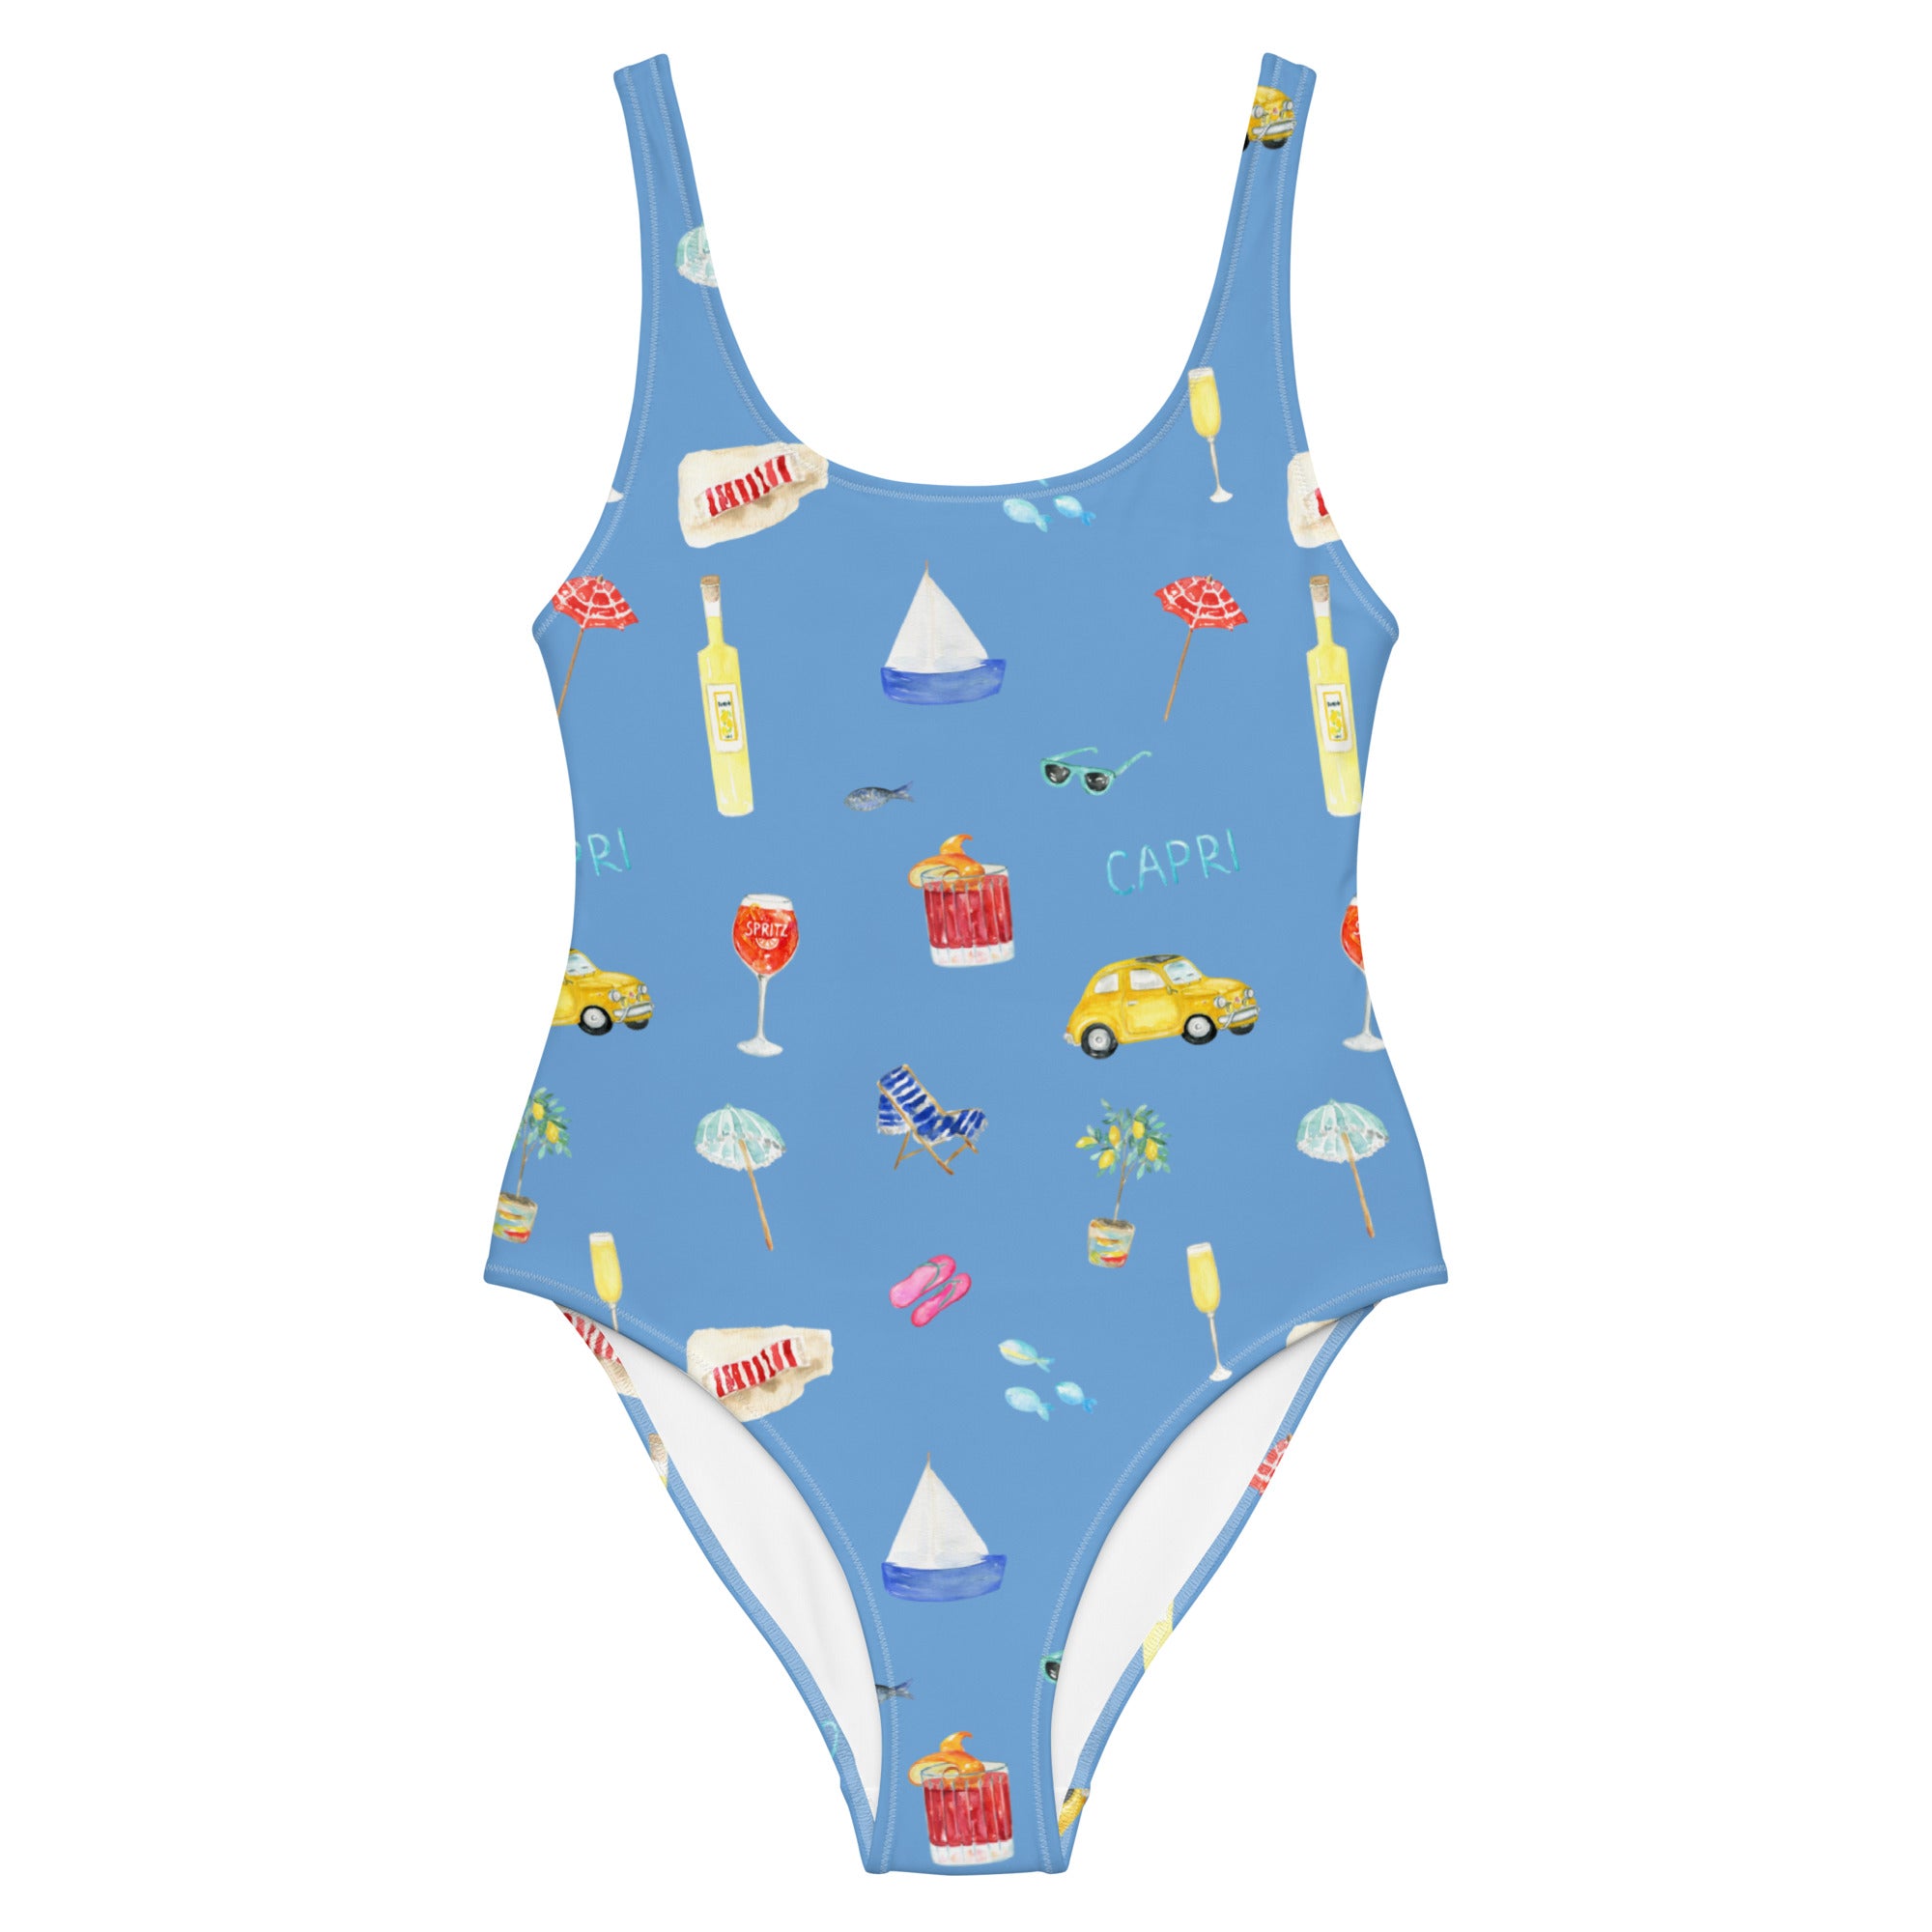 Capri - Swimsuit